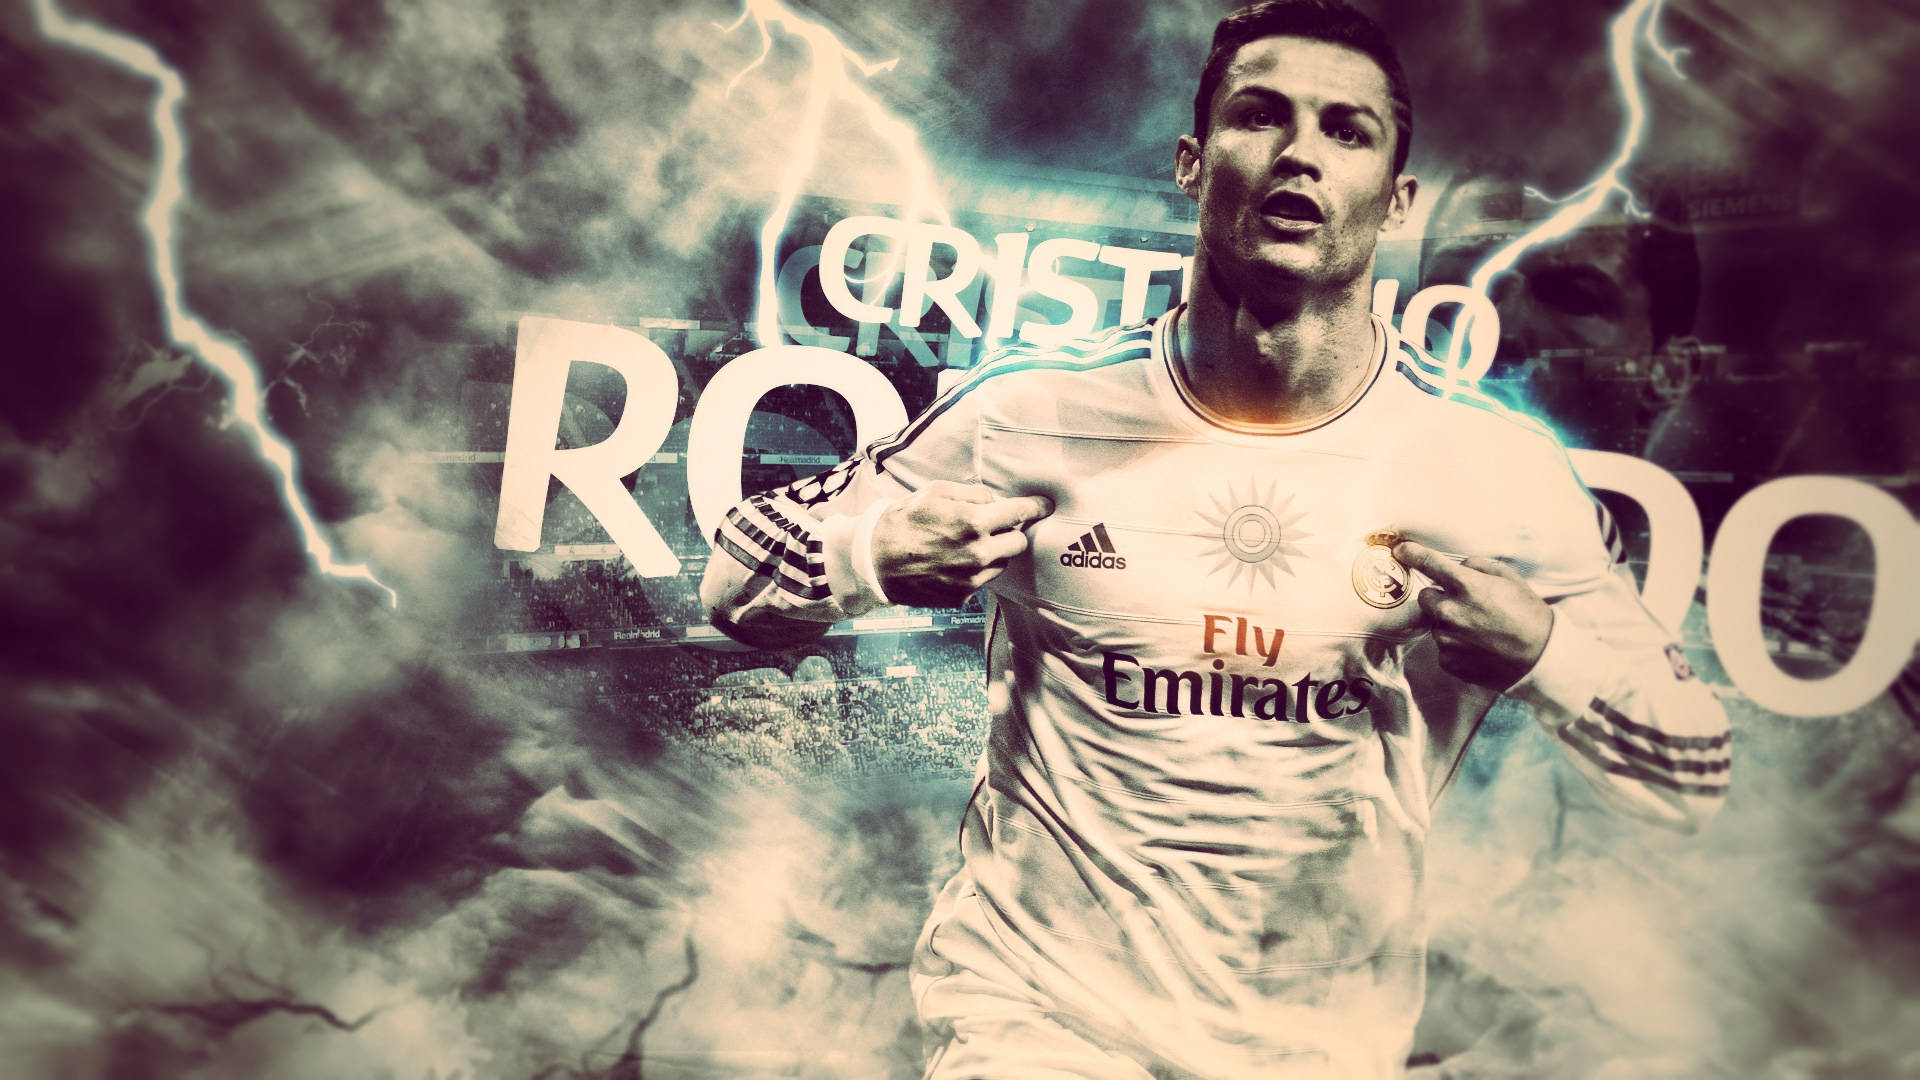 “Lightning Strikes For Ronaldo” Wallpaper